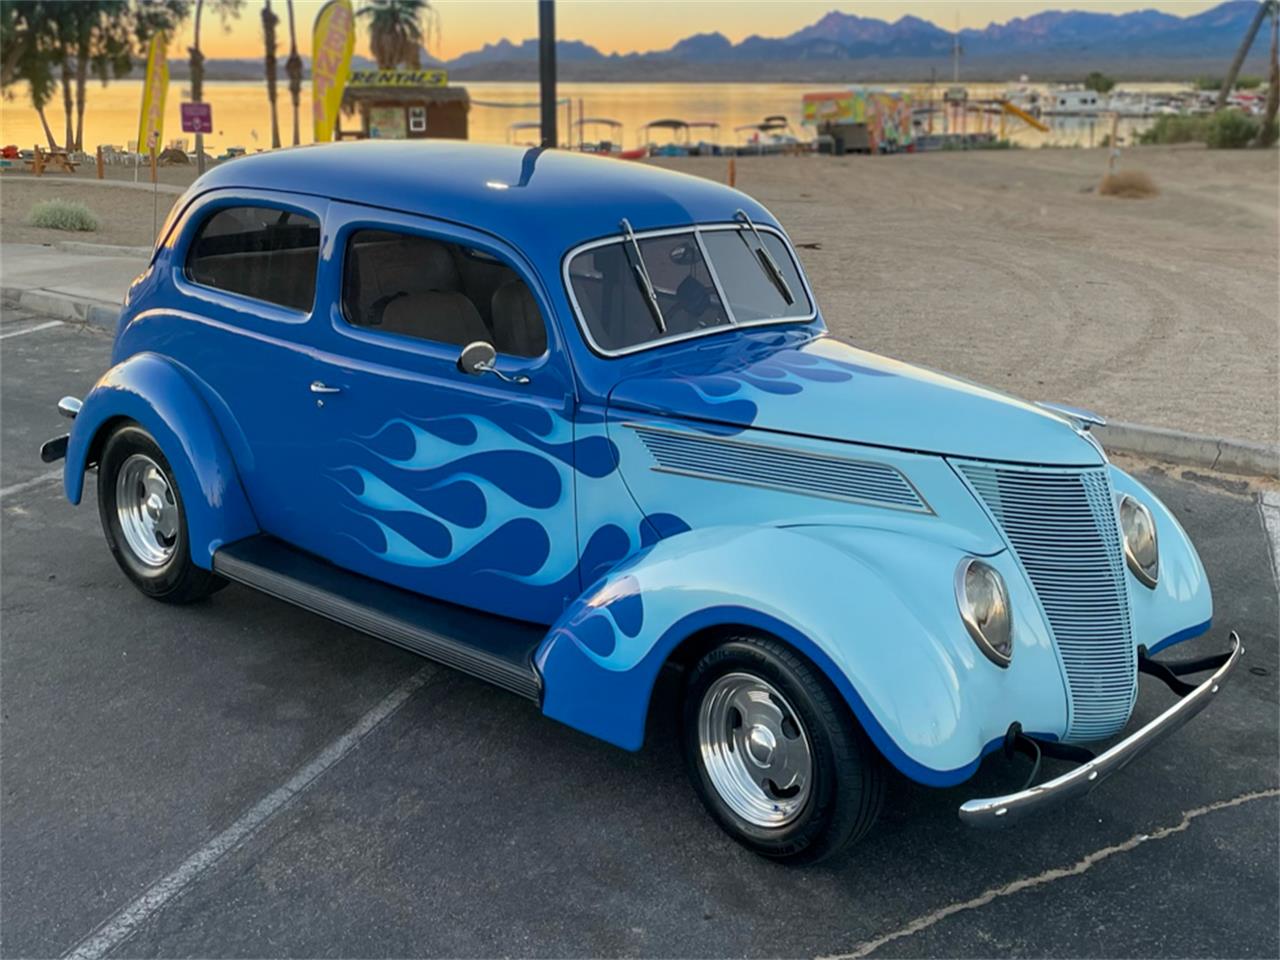 For Sale: 1937 Ford Tudor in Lake Havasu City, Arizona for sale in Lake Havasu City, AZ